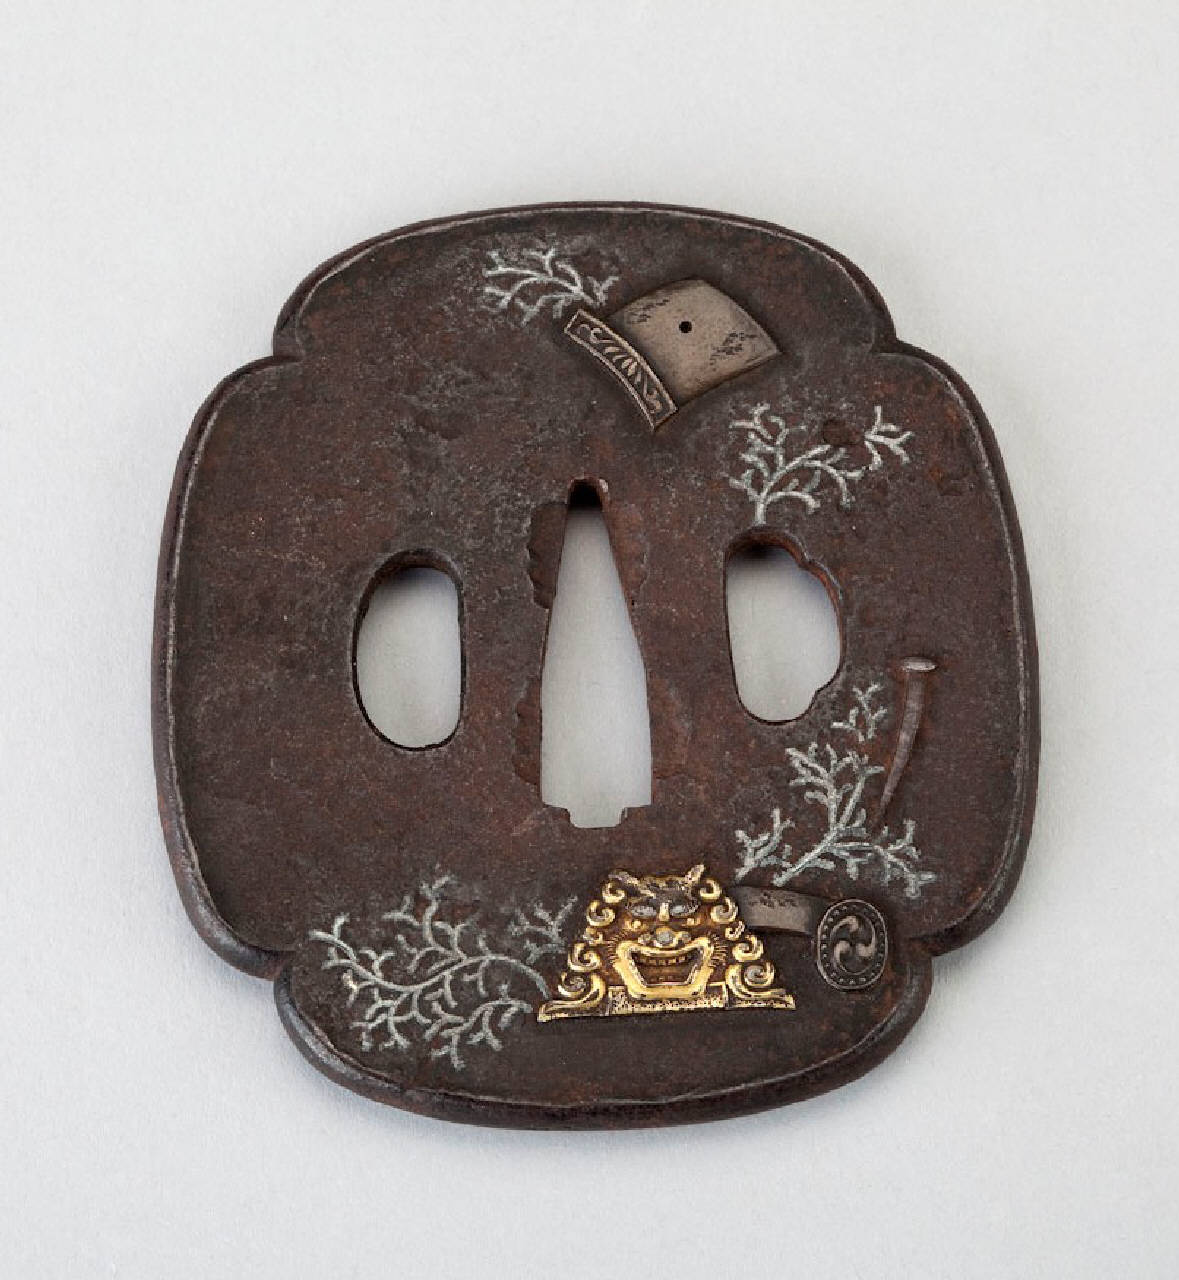 maschera di demone, tegola, spallaccio e chiodo tra racemi (elsa) - manifattura giapponese (secc. XVIII/ XIX)